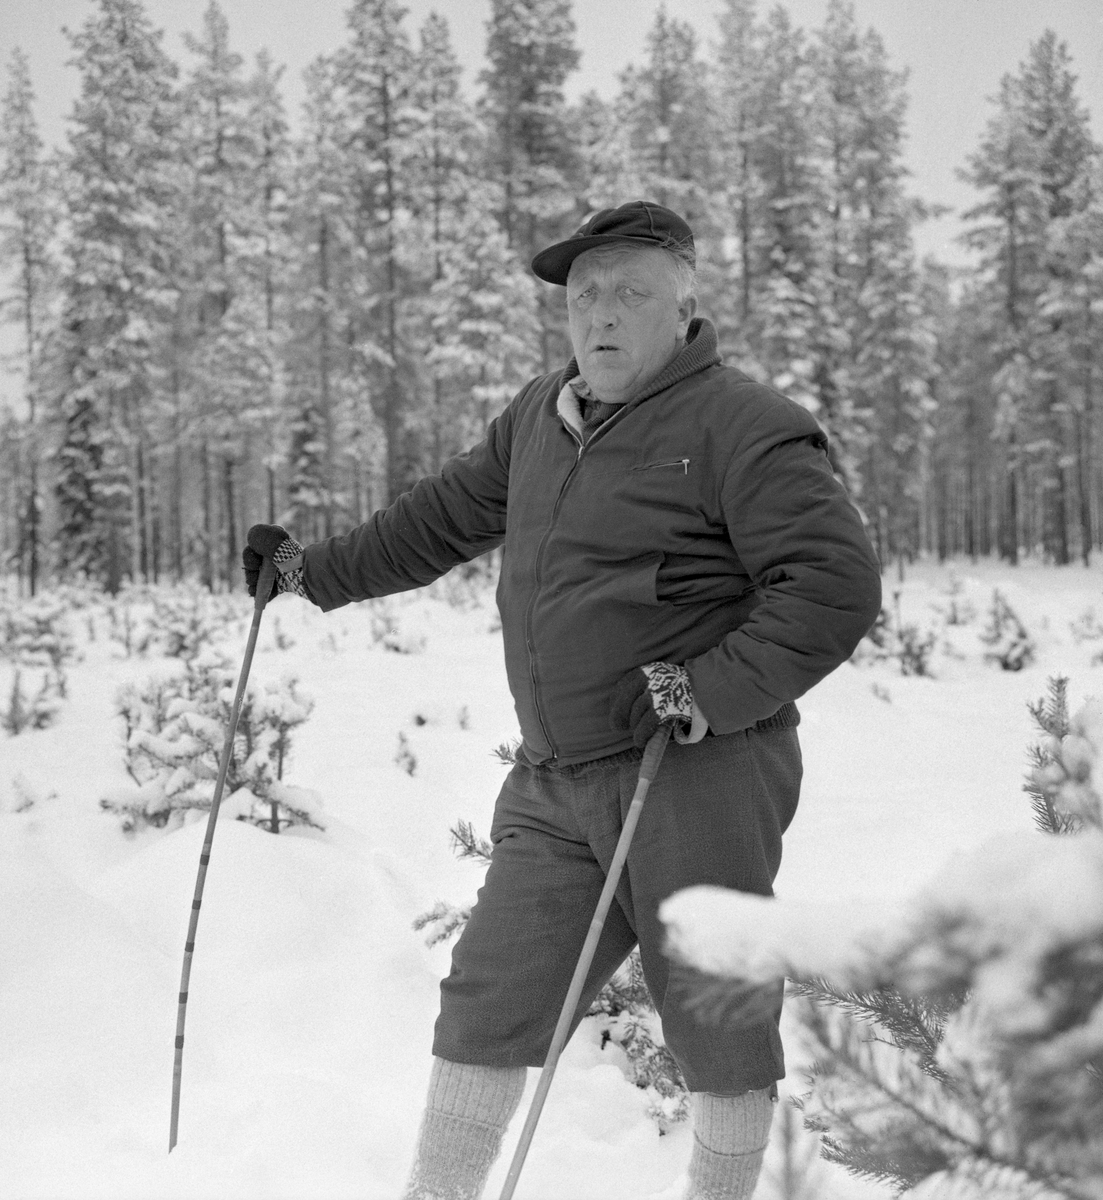 Skogbestyreren i Trysil kommuneskoger, Jostein Bjørnersen (1916-1998), fotografert under en skitur i Trysil-skogene, der han forvaltet kommunens eiendommer. Jostein Bjørnersen ble født i et skogsarbeiderhjem i Stor-Elvdal. Likevel greide han å skaffe seg utdanning. Bjørnersen avsluttet sine studier ved skogbrukslinja på Norges landbrukshøgskole på Ås i Akershus i 1946. Etter avlagt eksamen var ble han herredsskogmester i Alvdal og Folldal, samt skogbrukslærer ved Storsteigen landbruksskole fra 1947 til 1954. Deretter fikk Bjørnersen tilbud om herresskogmesterposten i hjembygda, men like etterpå bød det seg muligheter for en lederstilling i Trysil kommuneskoger. Dermed ble det Trysil for den unge forstkandidaten. Bjørnersen hadde gode kontakter i sosialdemokratiet, som var politisk dominant i hans mest virksomme år. Det var ingen ulempe i den posisjonen han hadde. Med kommuneskogbestyrerstillingen og de kommunale skogressursene som ressursgrunnlag, ble Bjørnersen en sentral industrireiser og næringsutvikler i Trysil i 1960- og 70-åra.